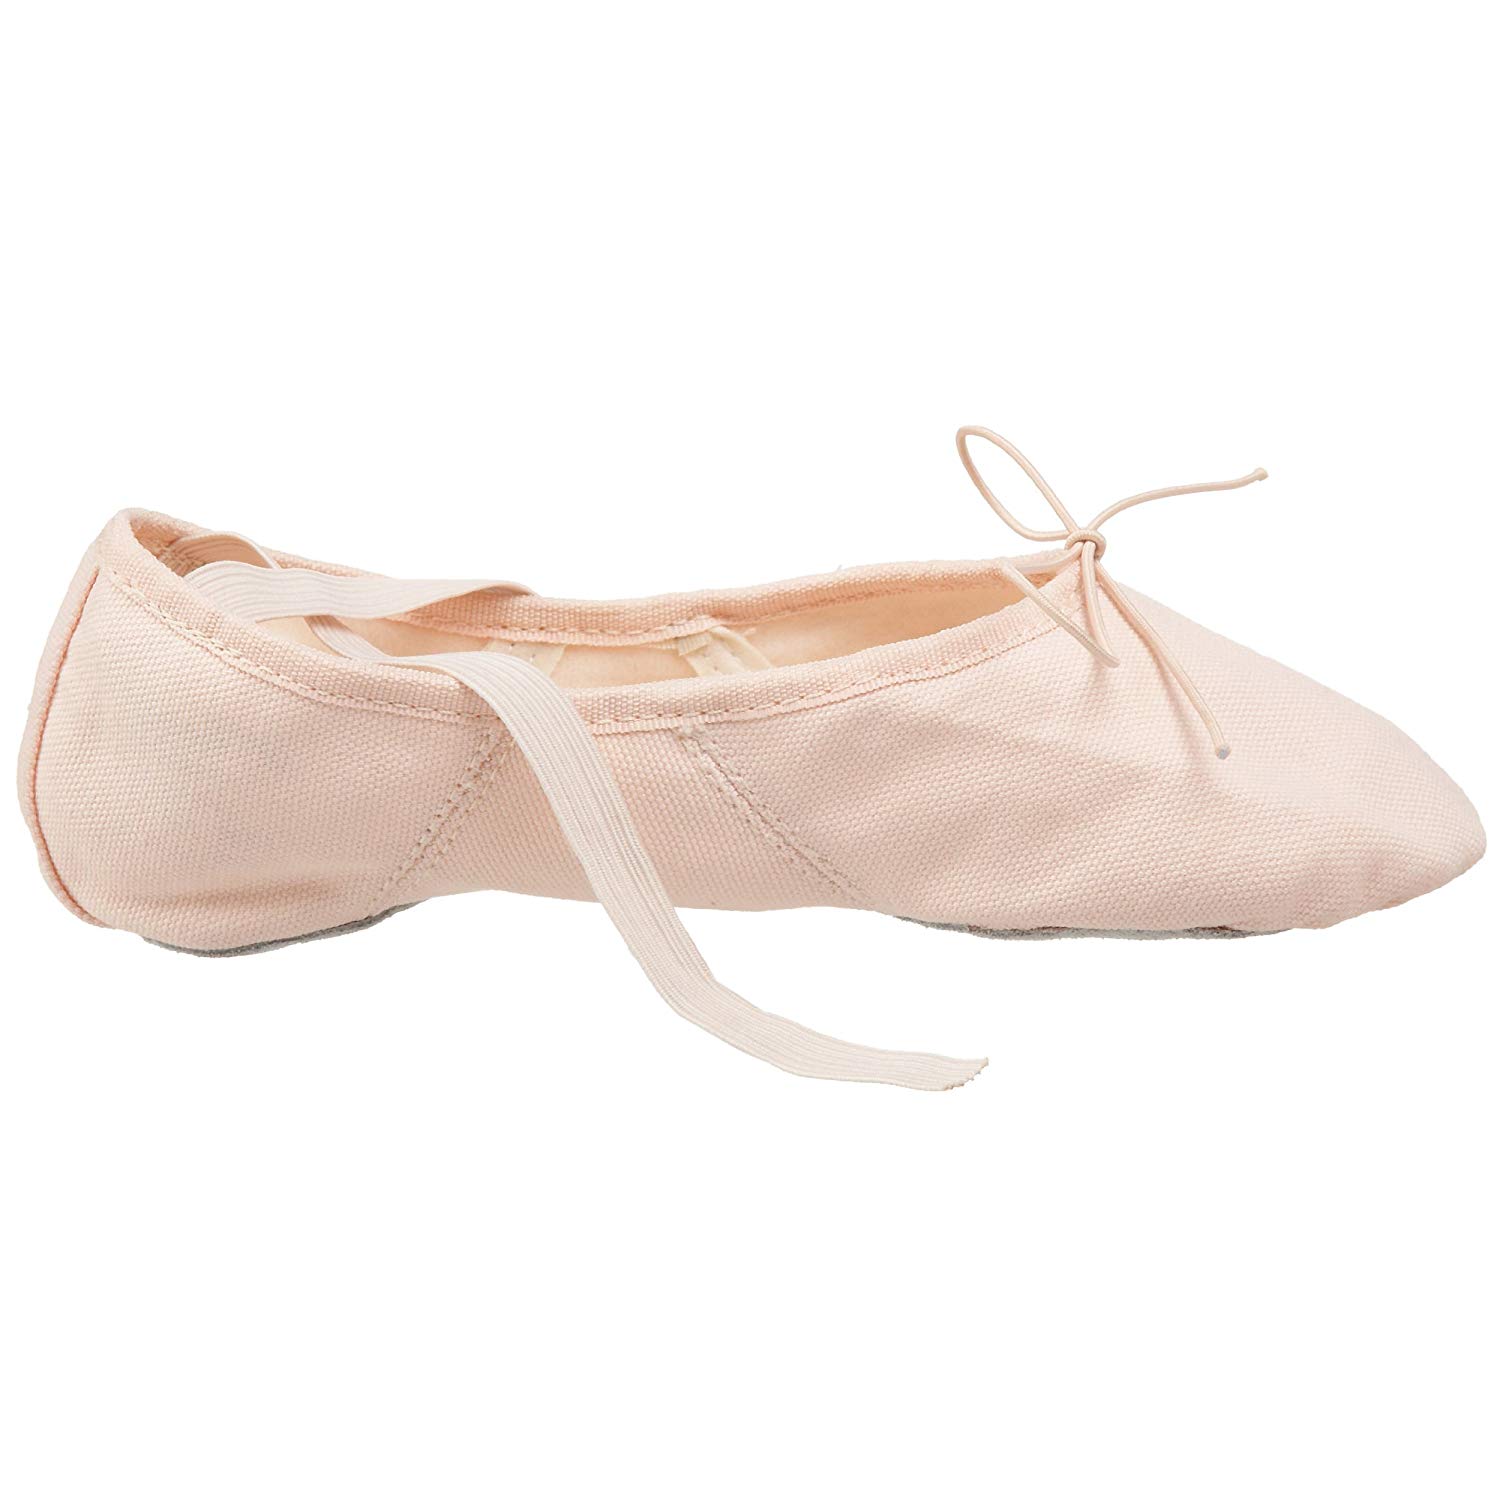 Capezio Women's Canvas Juliet Ballet Shoe,Light Ballet Pink,8 M, Pink ...